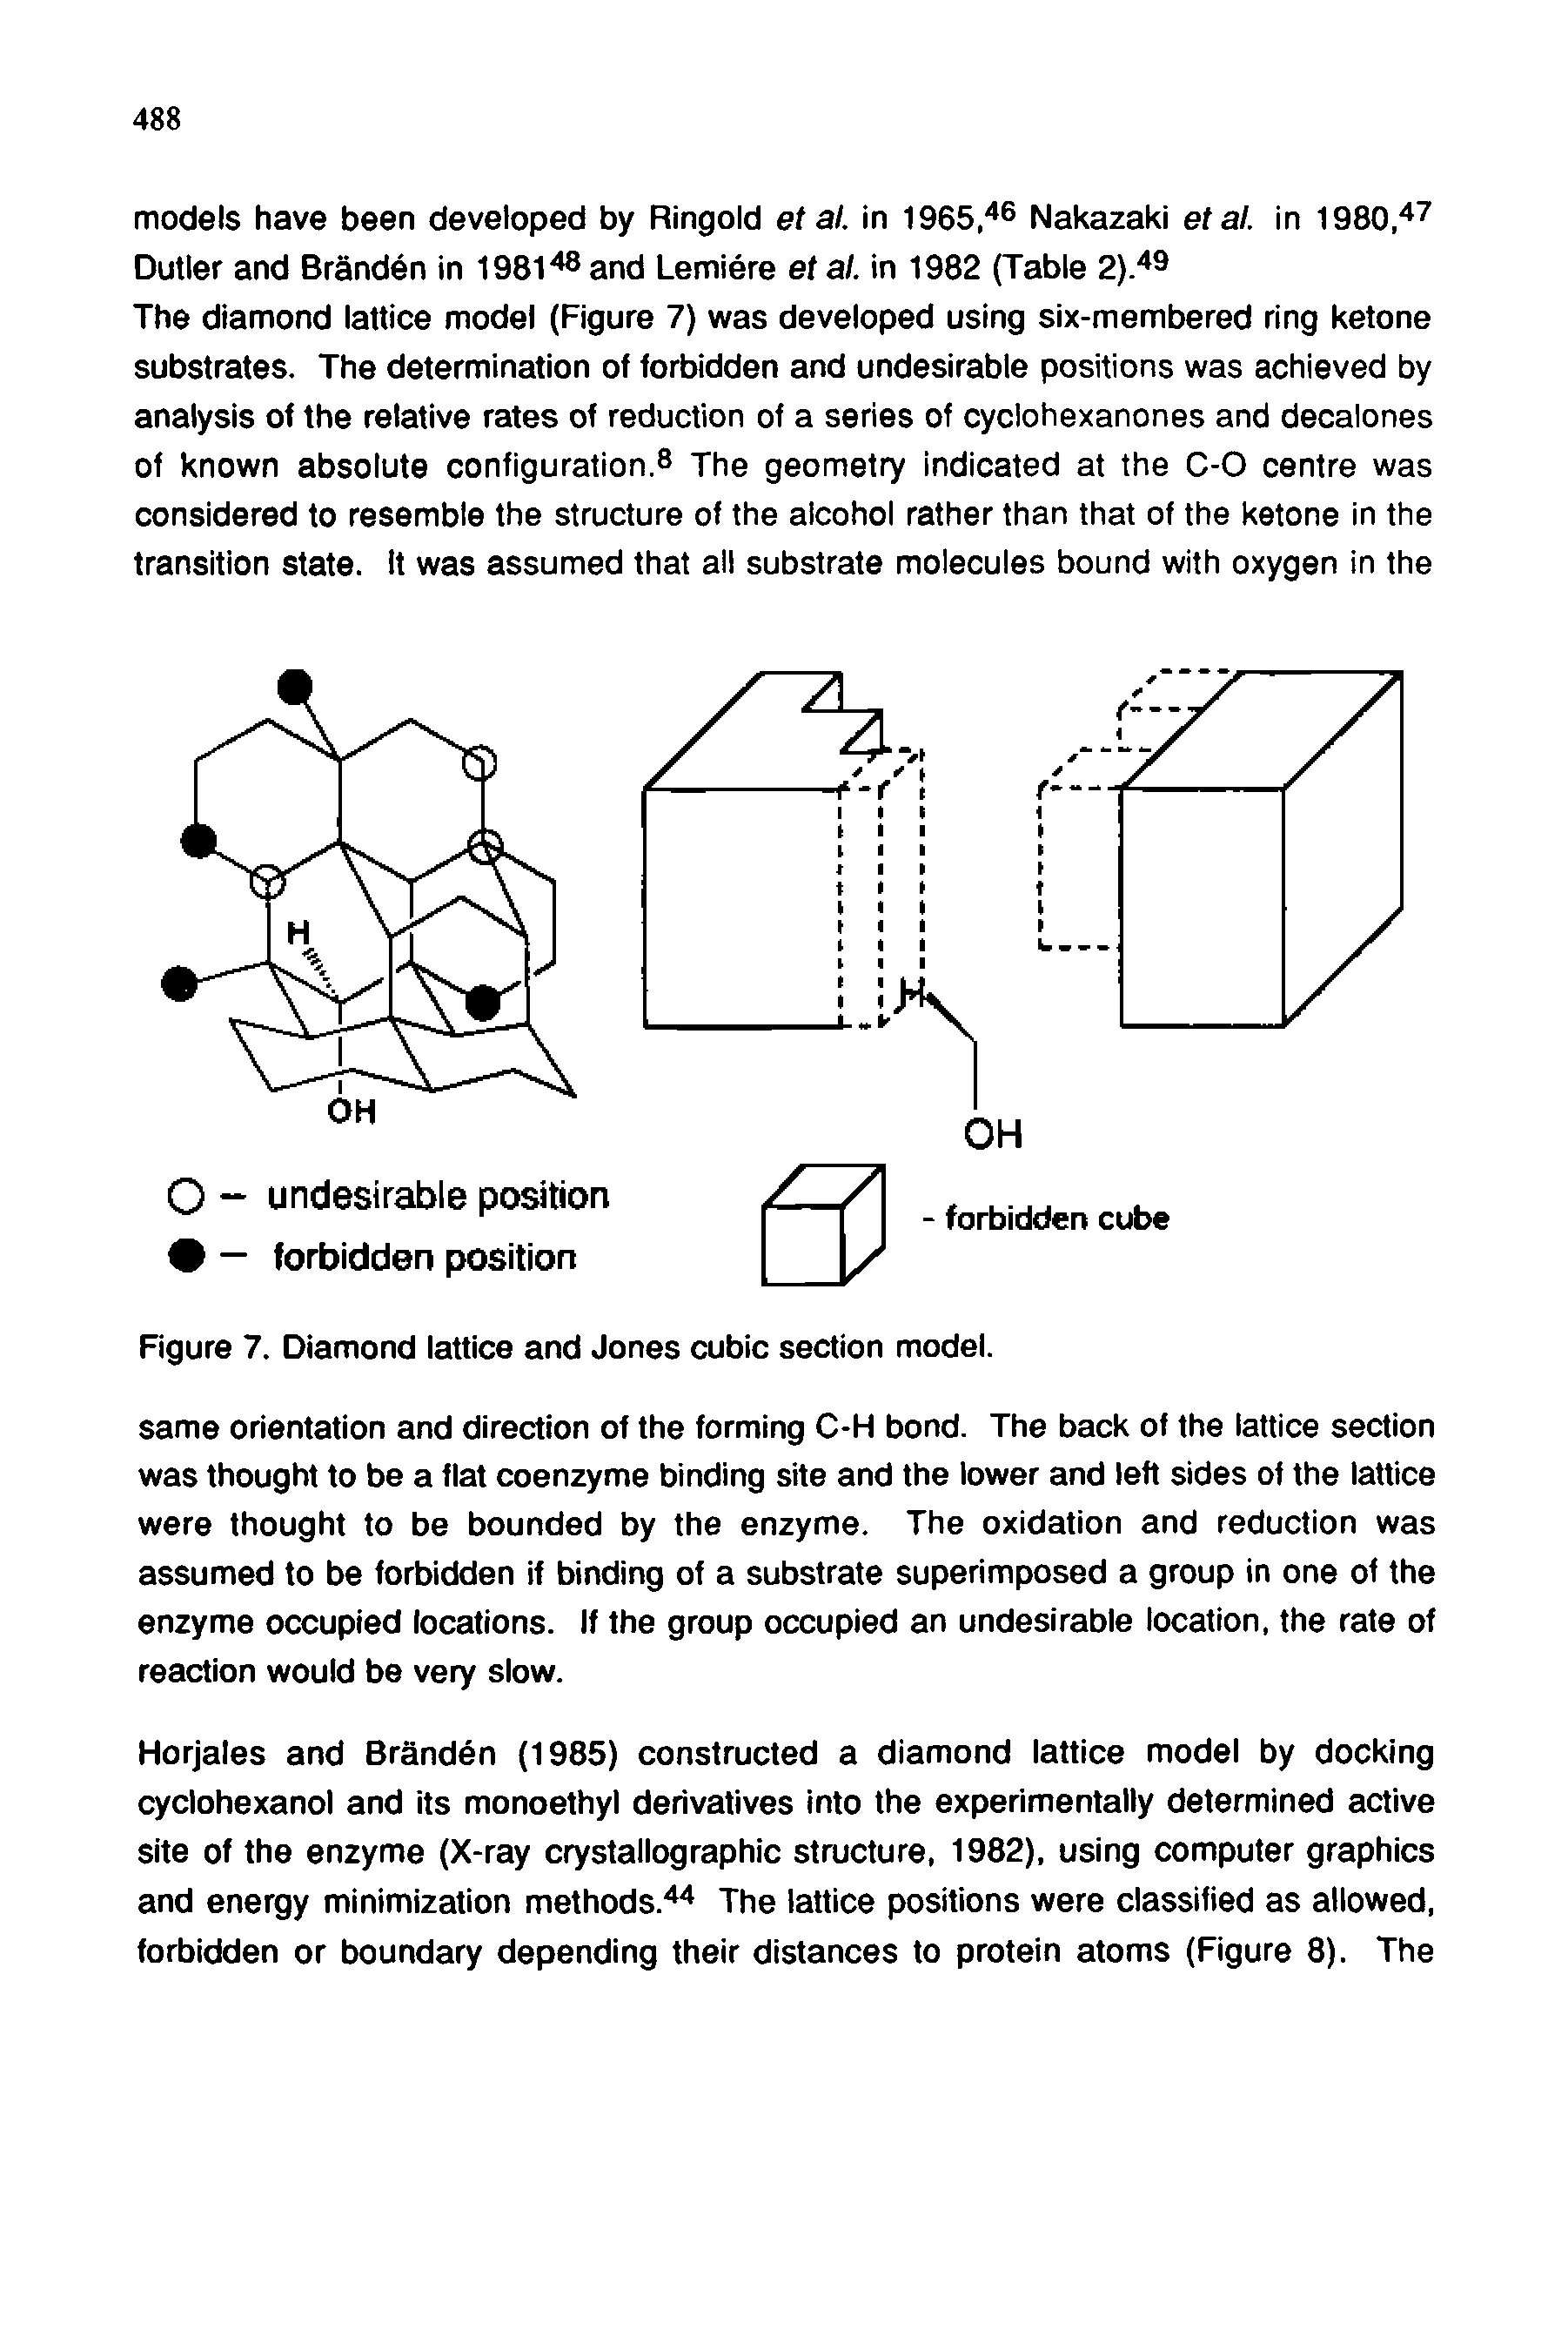 Figure 7. Diamond lattice and Jones cubic section model.